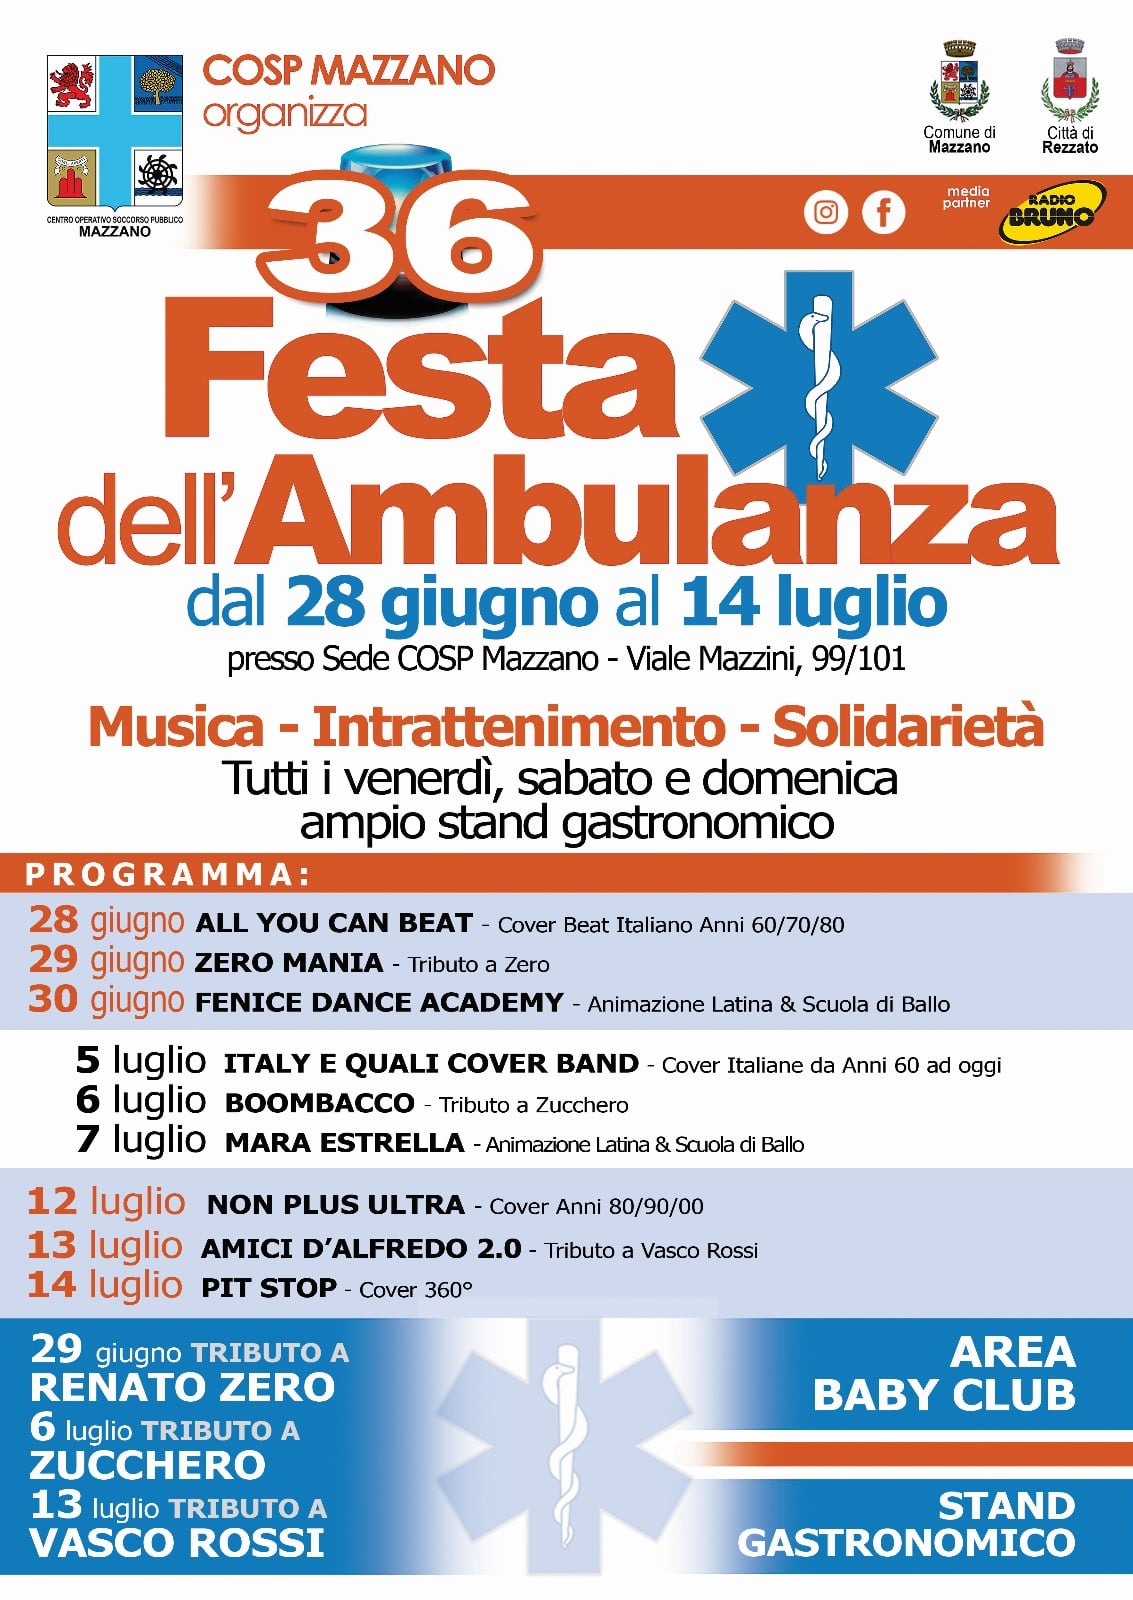 Dal 28 giugno al 14 luglio, COSP Mazzano organizza la Festa dell'Ambulanza!